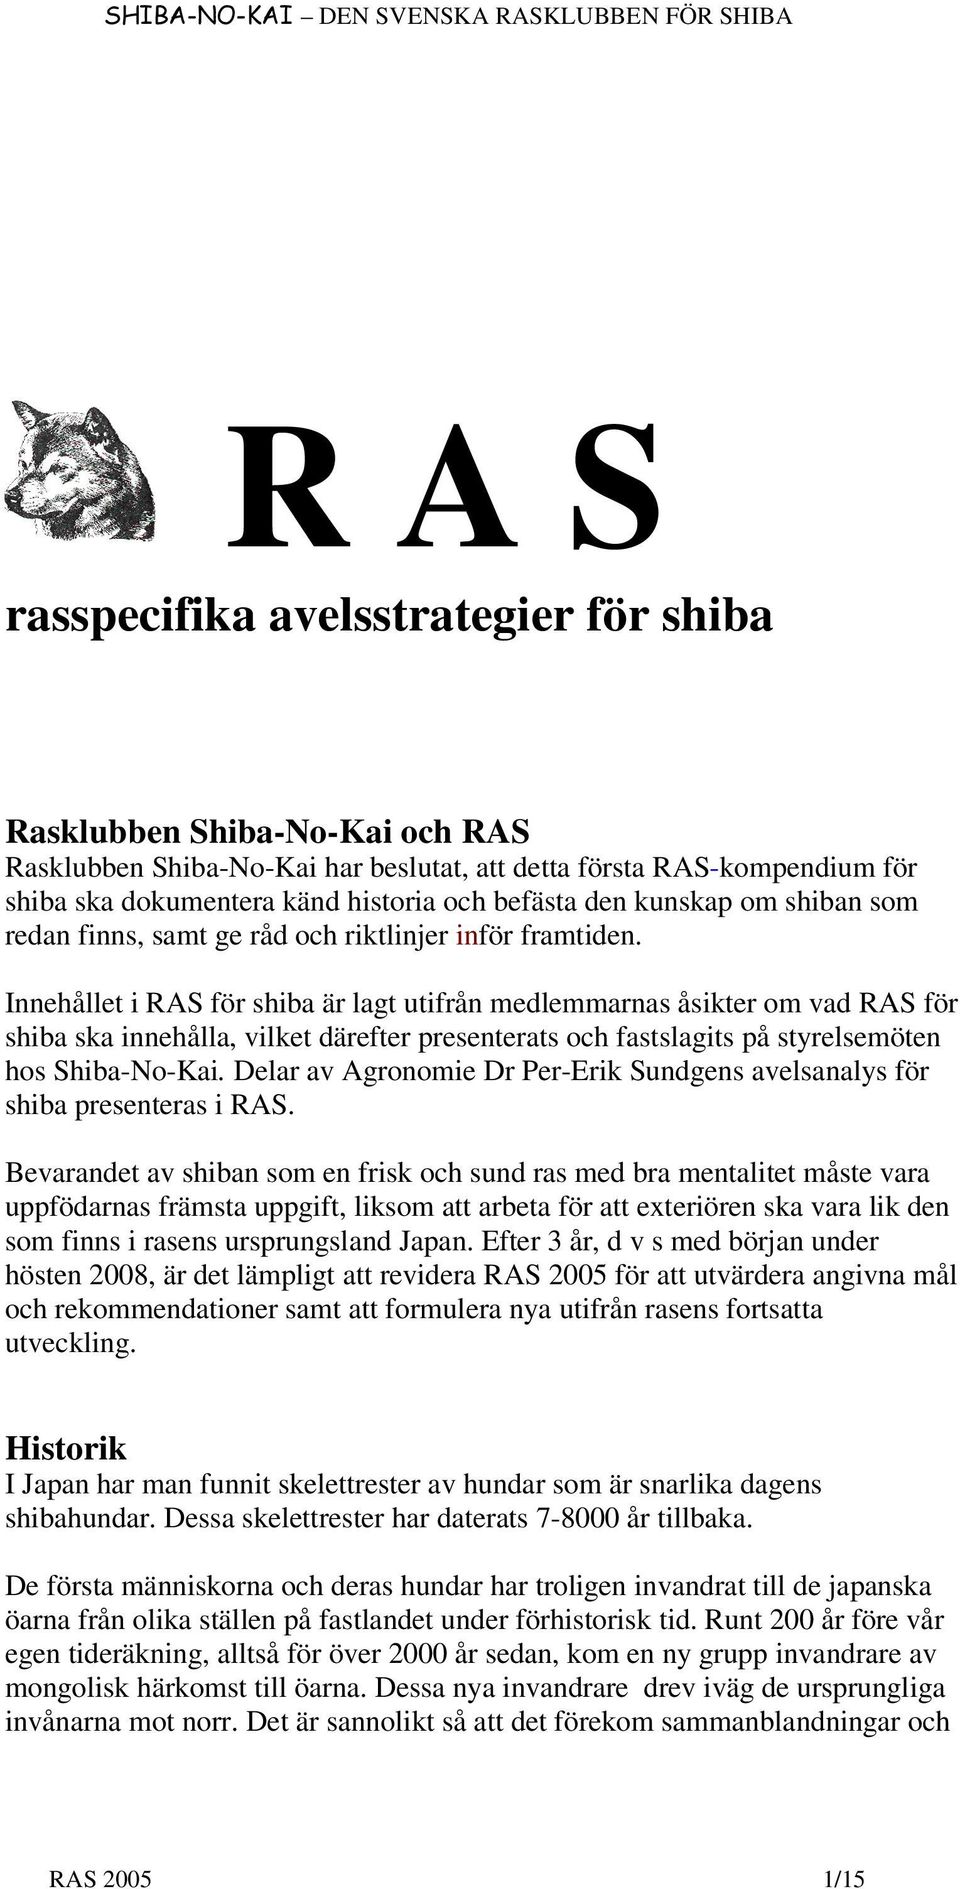 Innehållet i RAS för shiba är lagt utifrån medlemmarnas åsikter om vad RAS för shiba ska innehålla, vilket därefter presenterats och fastslagits på styrelsemöten hos Shiba-No-Kai.